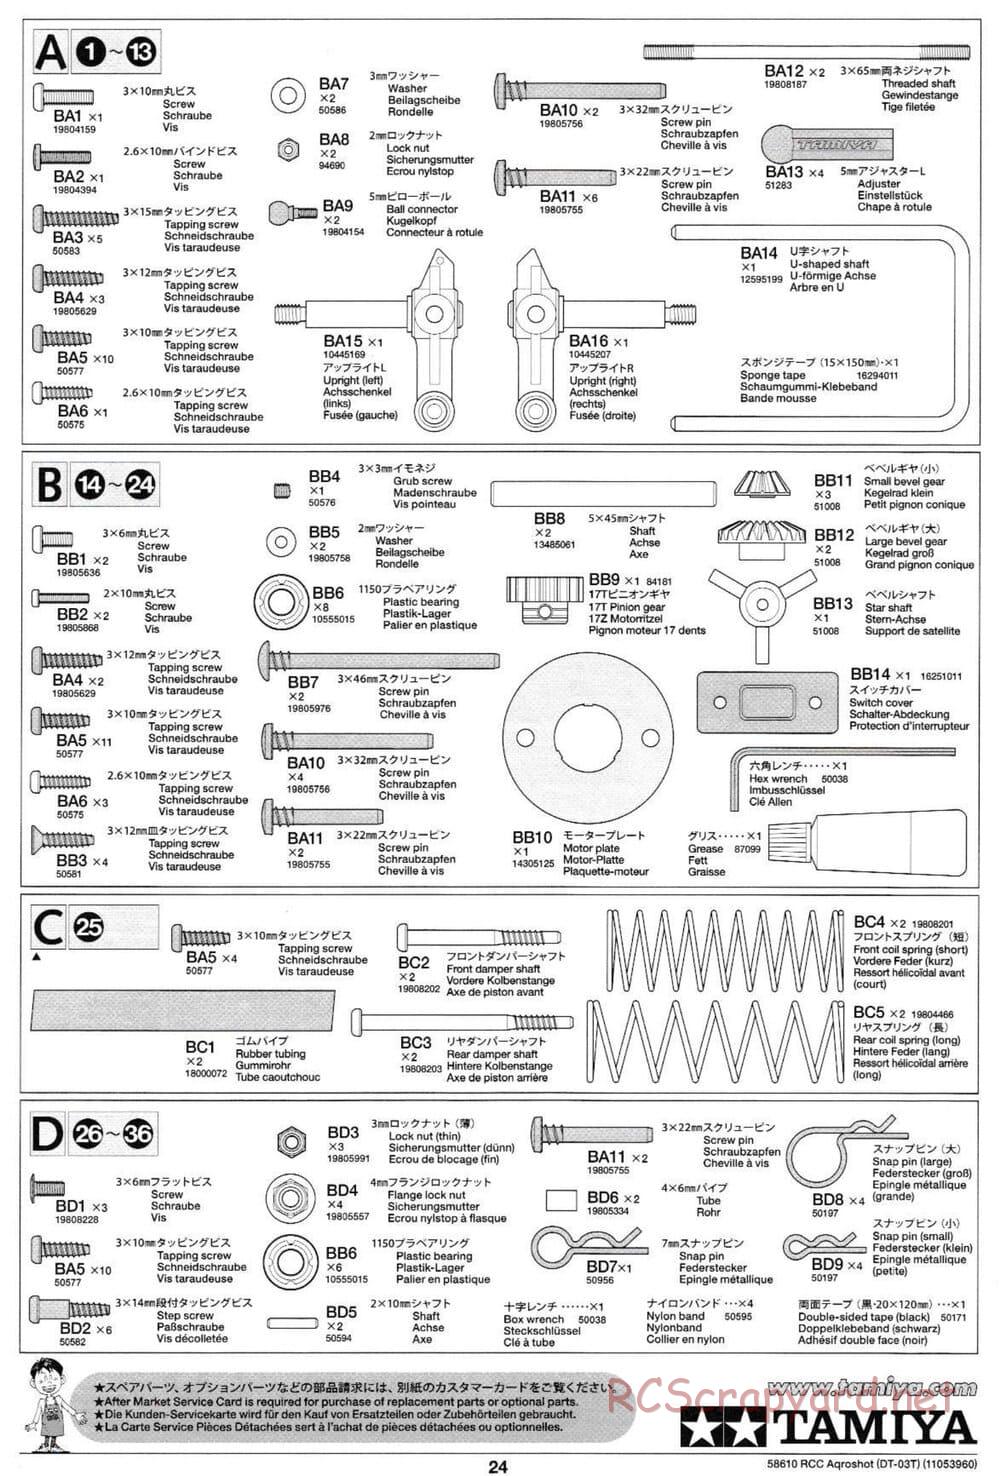 Tamiya - Aqroshot Chassis - Manual - Page 24